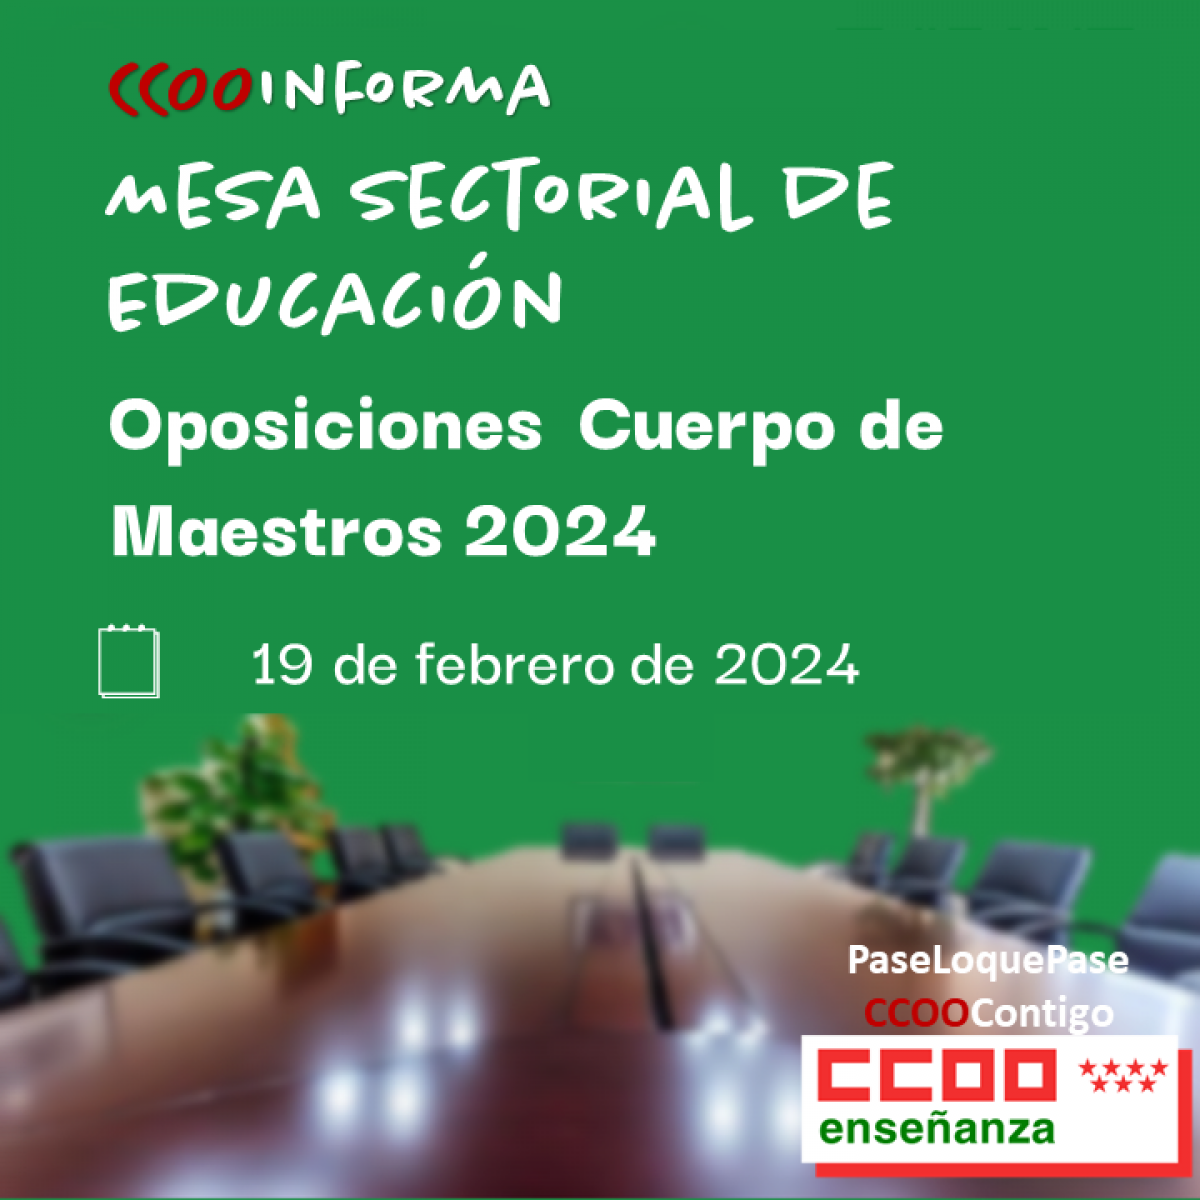 Oposiciones Cuerpo de Maestros 2024